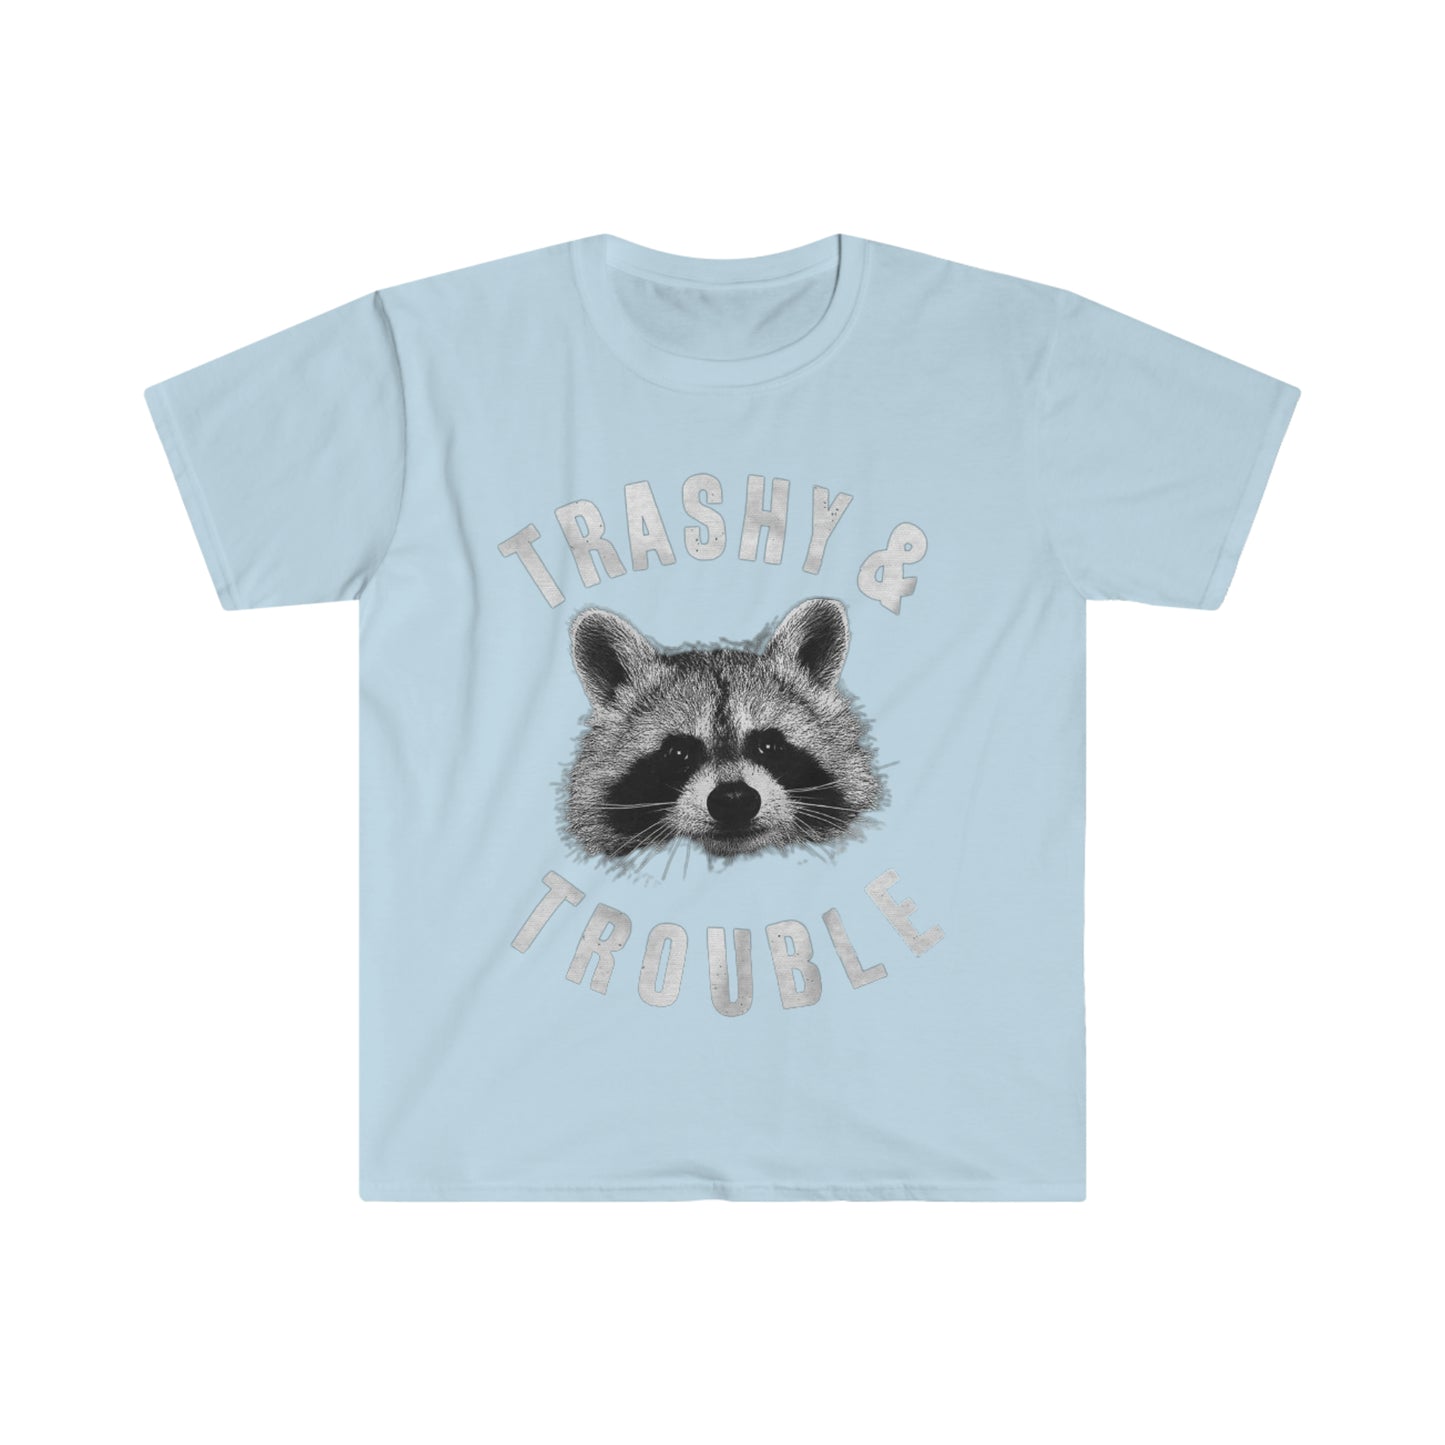 Trashy & Trouble - Unisex Softstyle T-Shirt